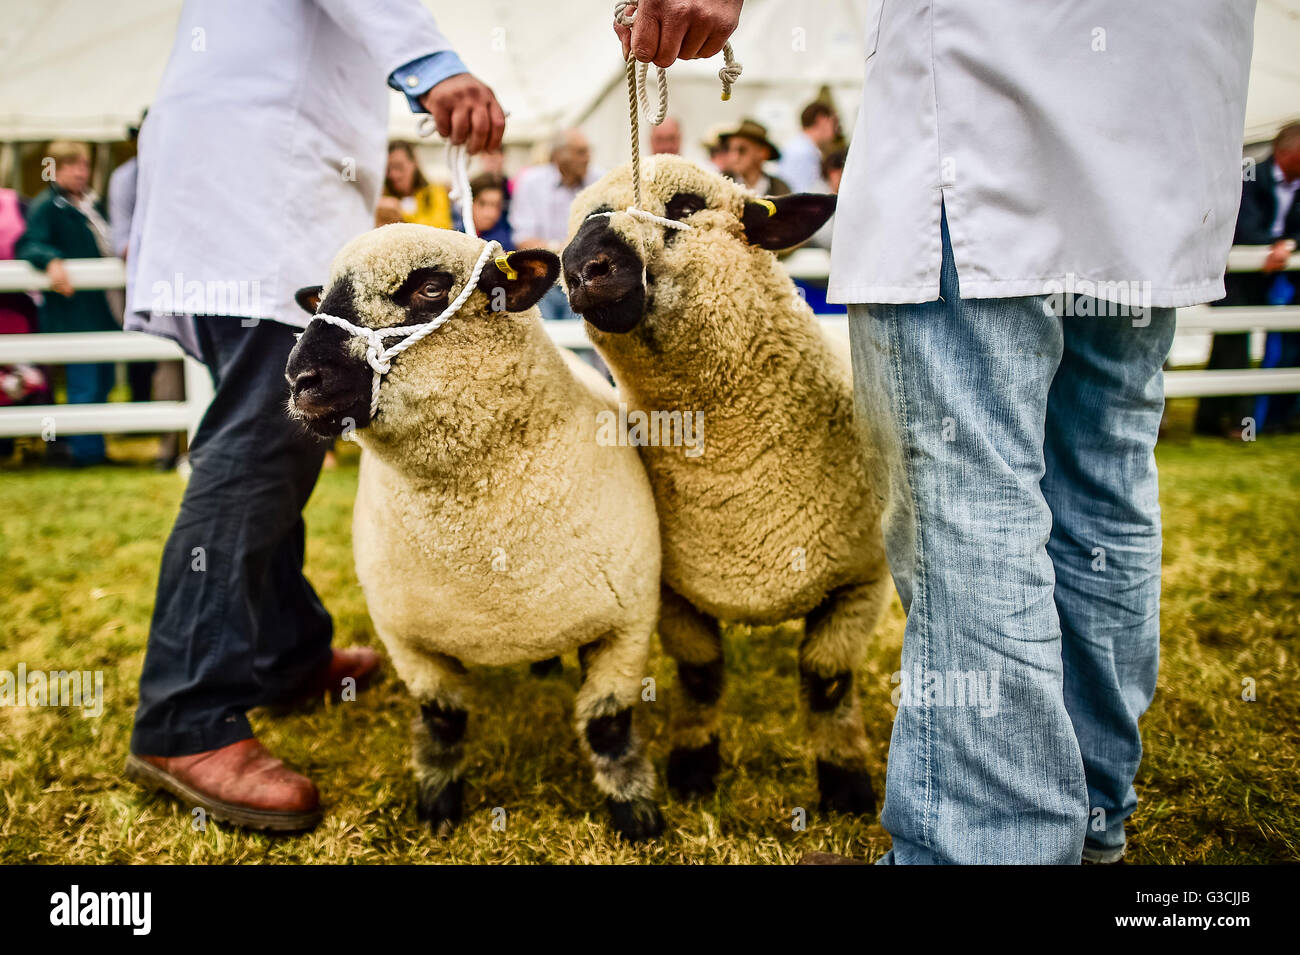 Les moutons sont stabilisés dans l'arène où les meilleurs couples nicheurs sont exposés sur deux jours au Royal Cornwall Show, Wadebridge, Cornwall. Banque D'Images